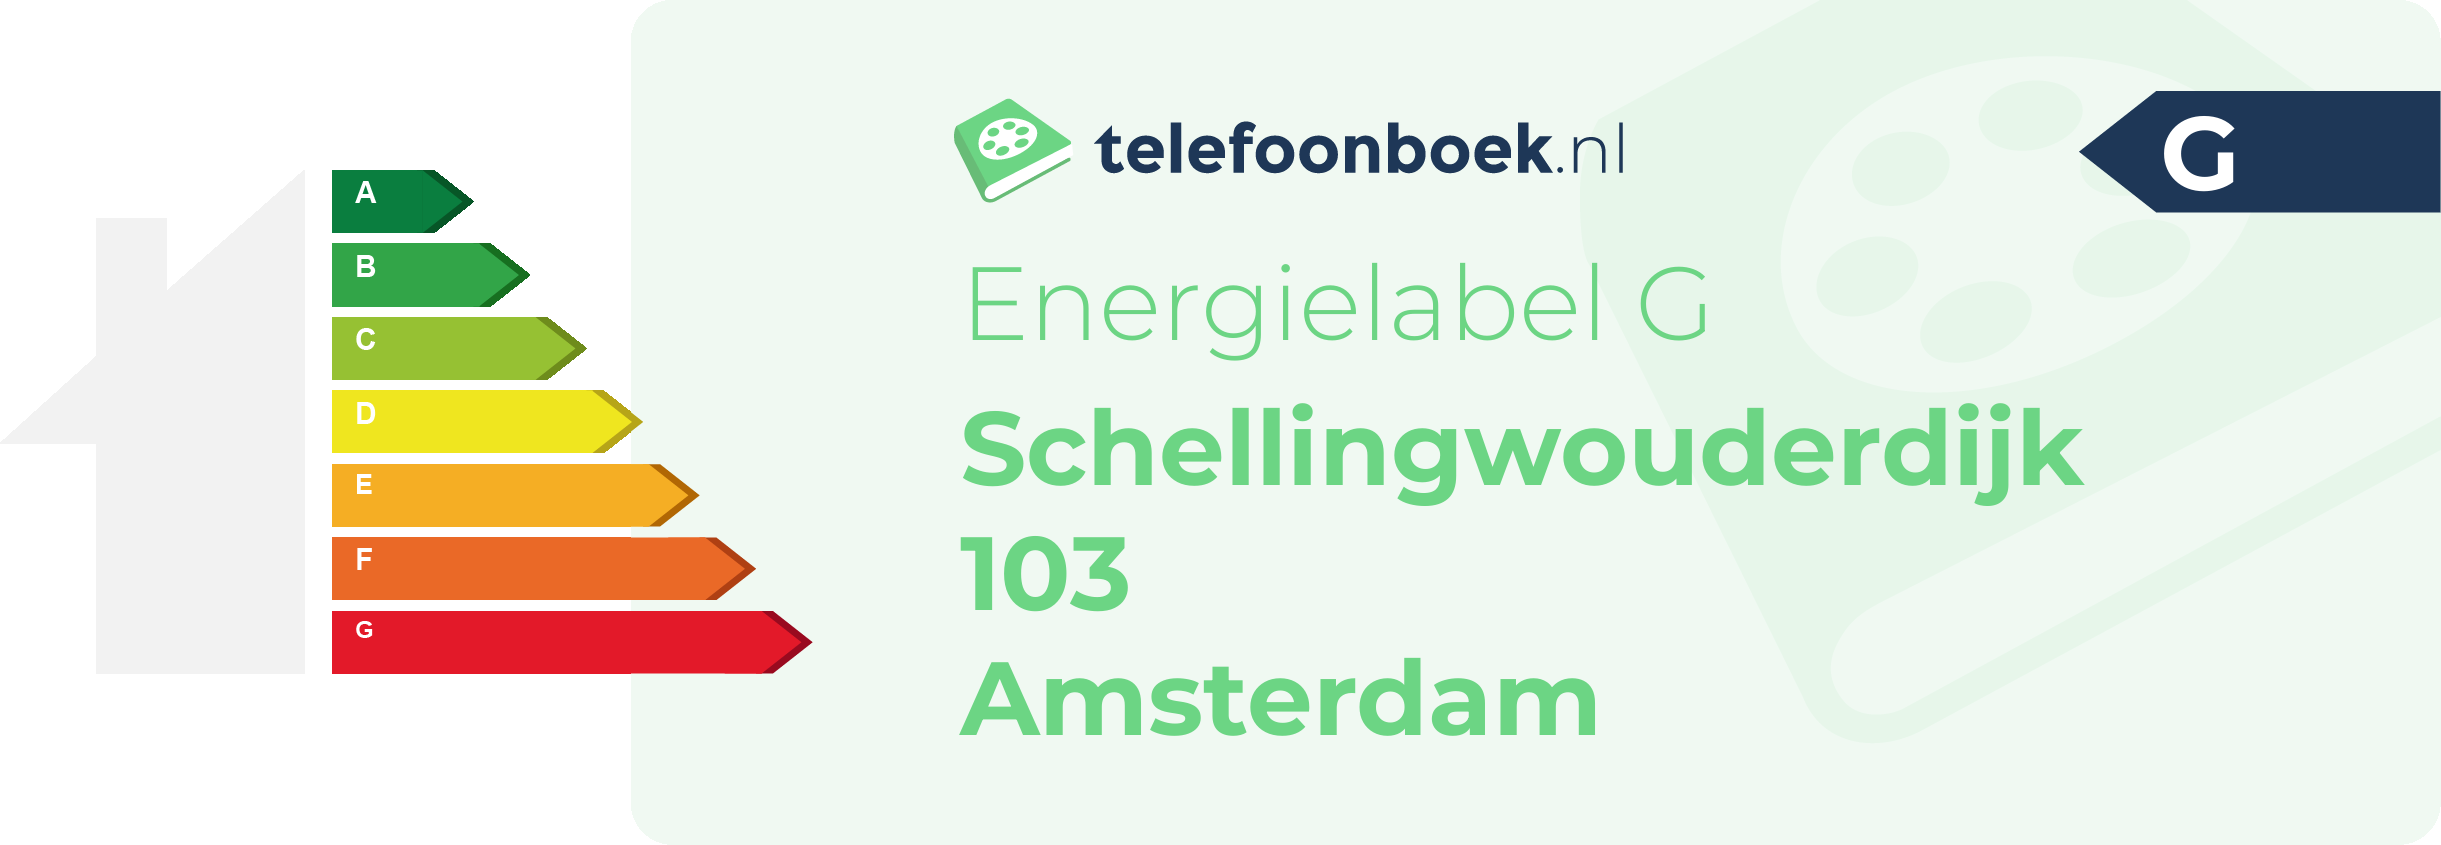 Energielabel Schellingwouderdijk 103 Amsterdam